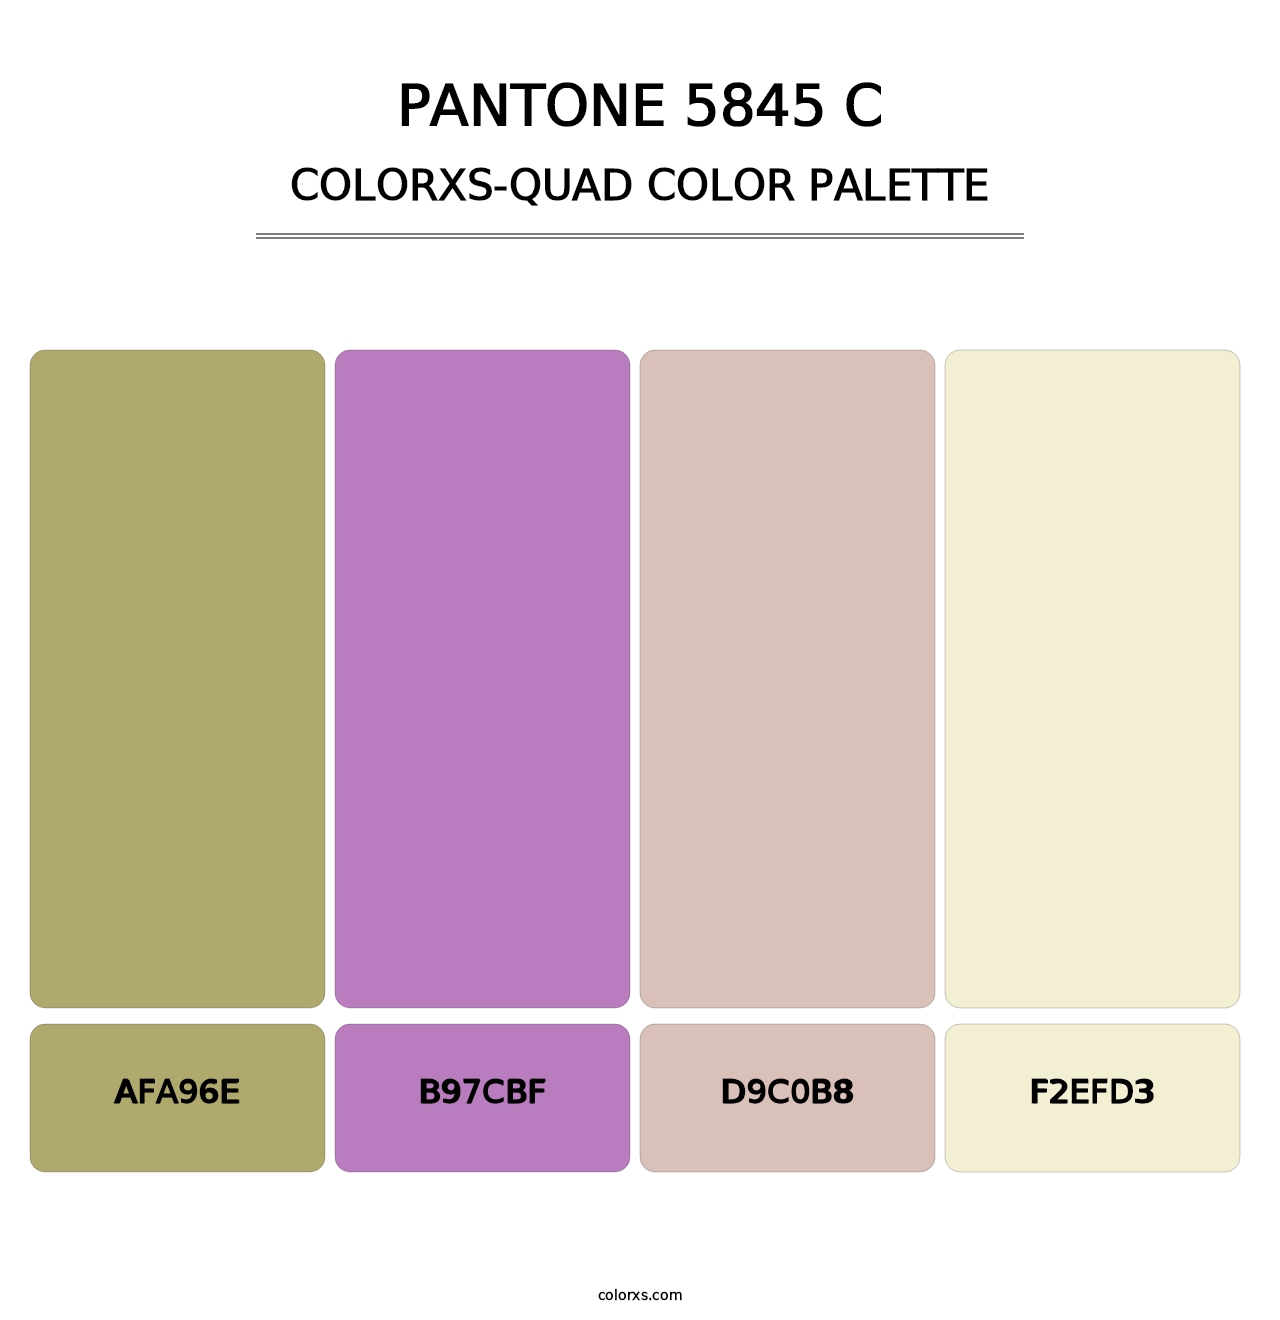 PANTONE 5845 C - Colorxs Quad Palette